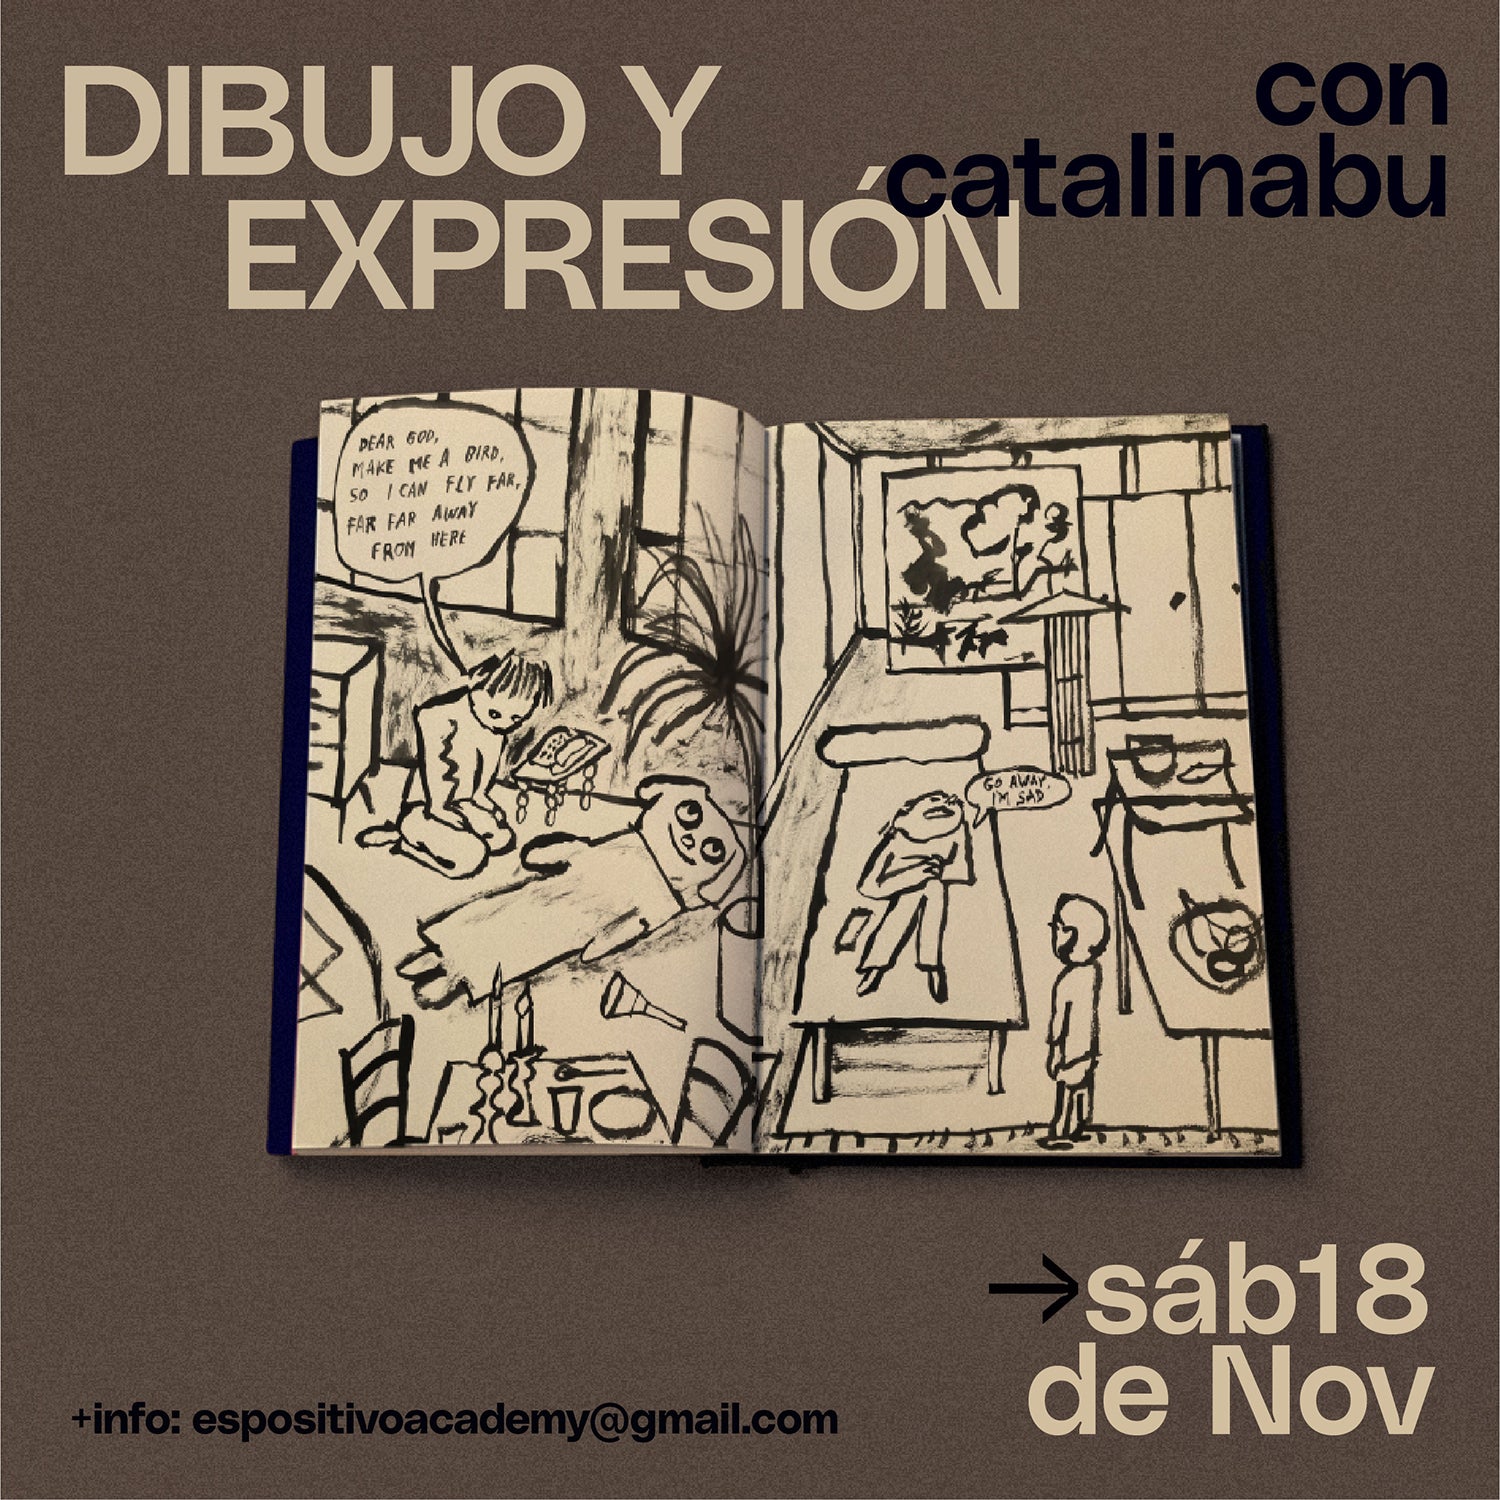 Taller de dibujo y expresión con Catalina Bu <br> Sábado 18 de noviembre